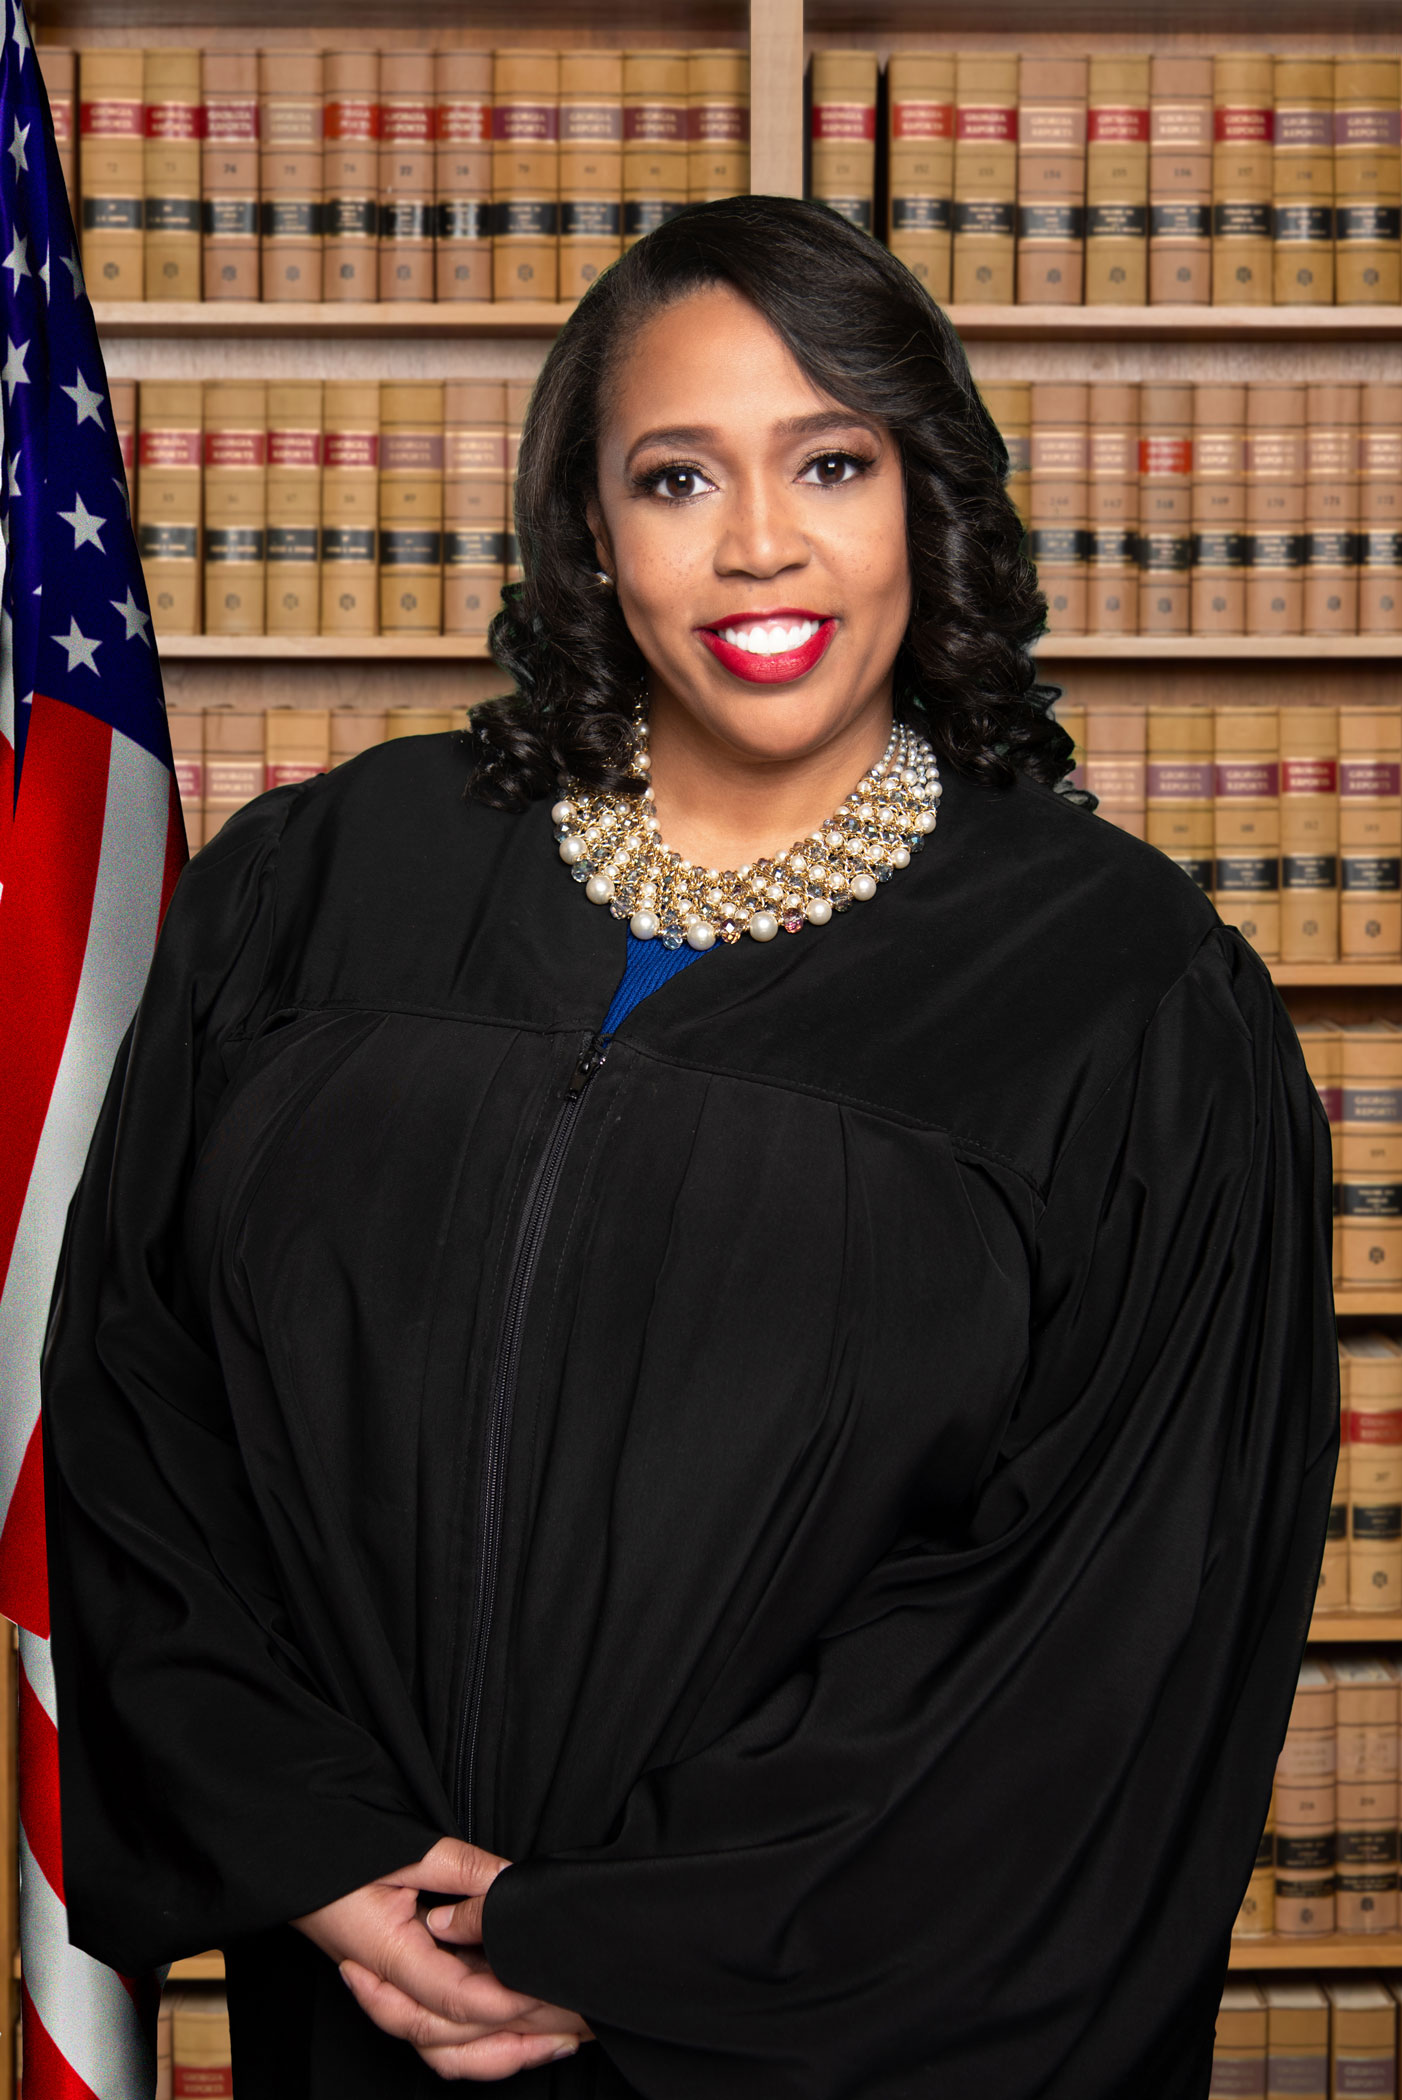 Judge Shermela J. Williams